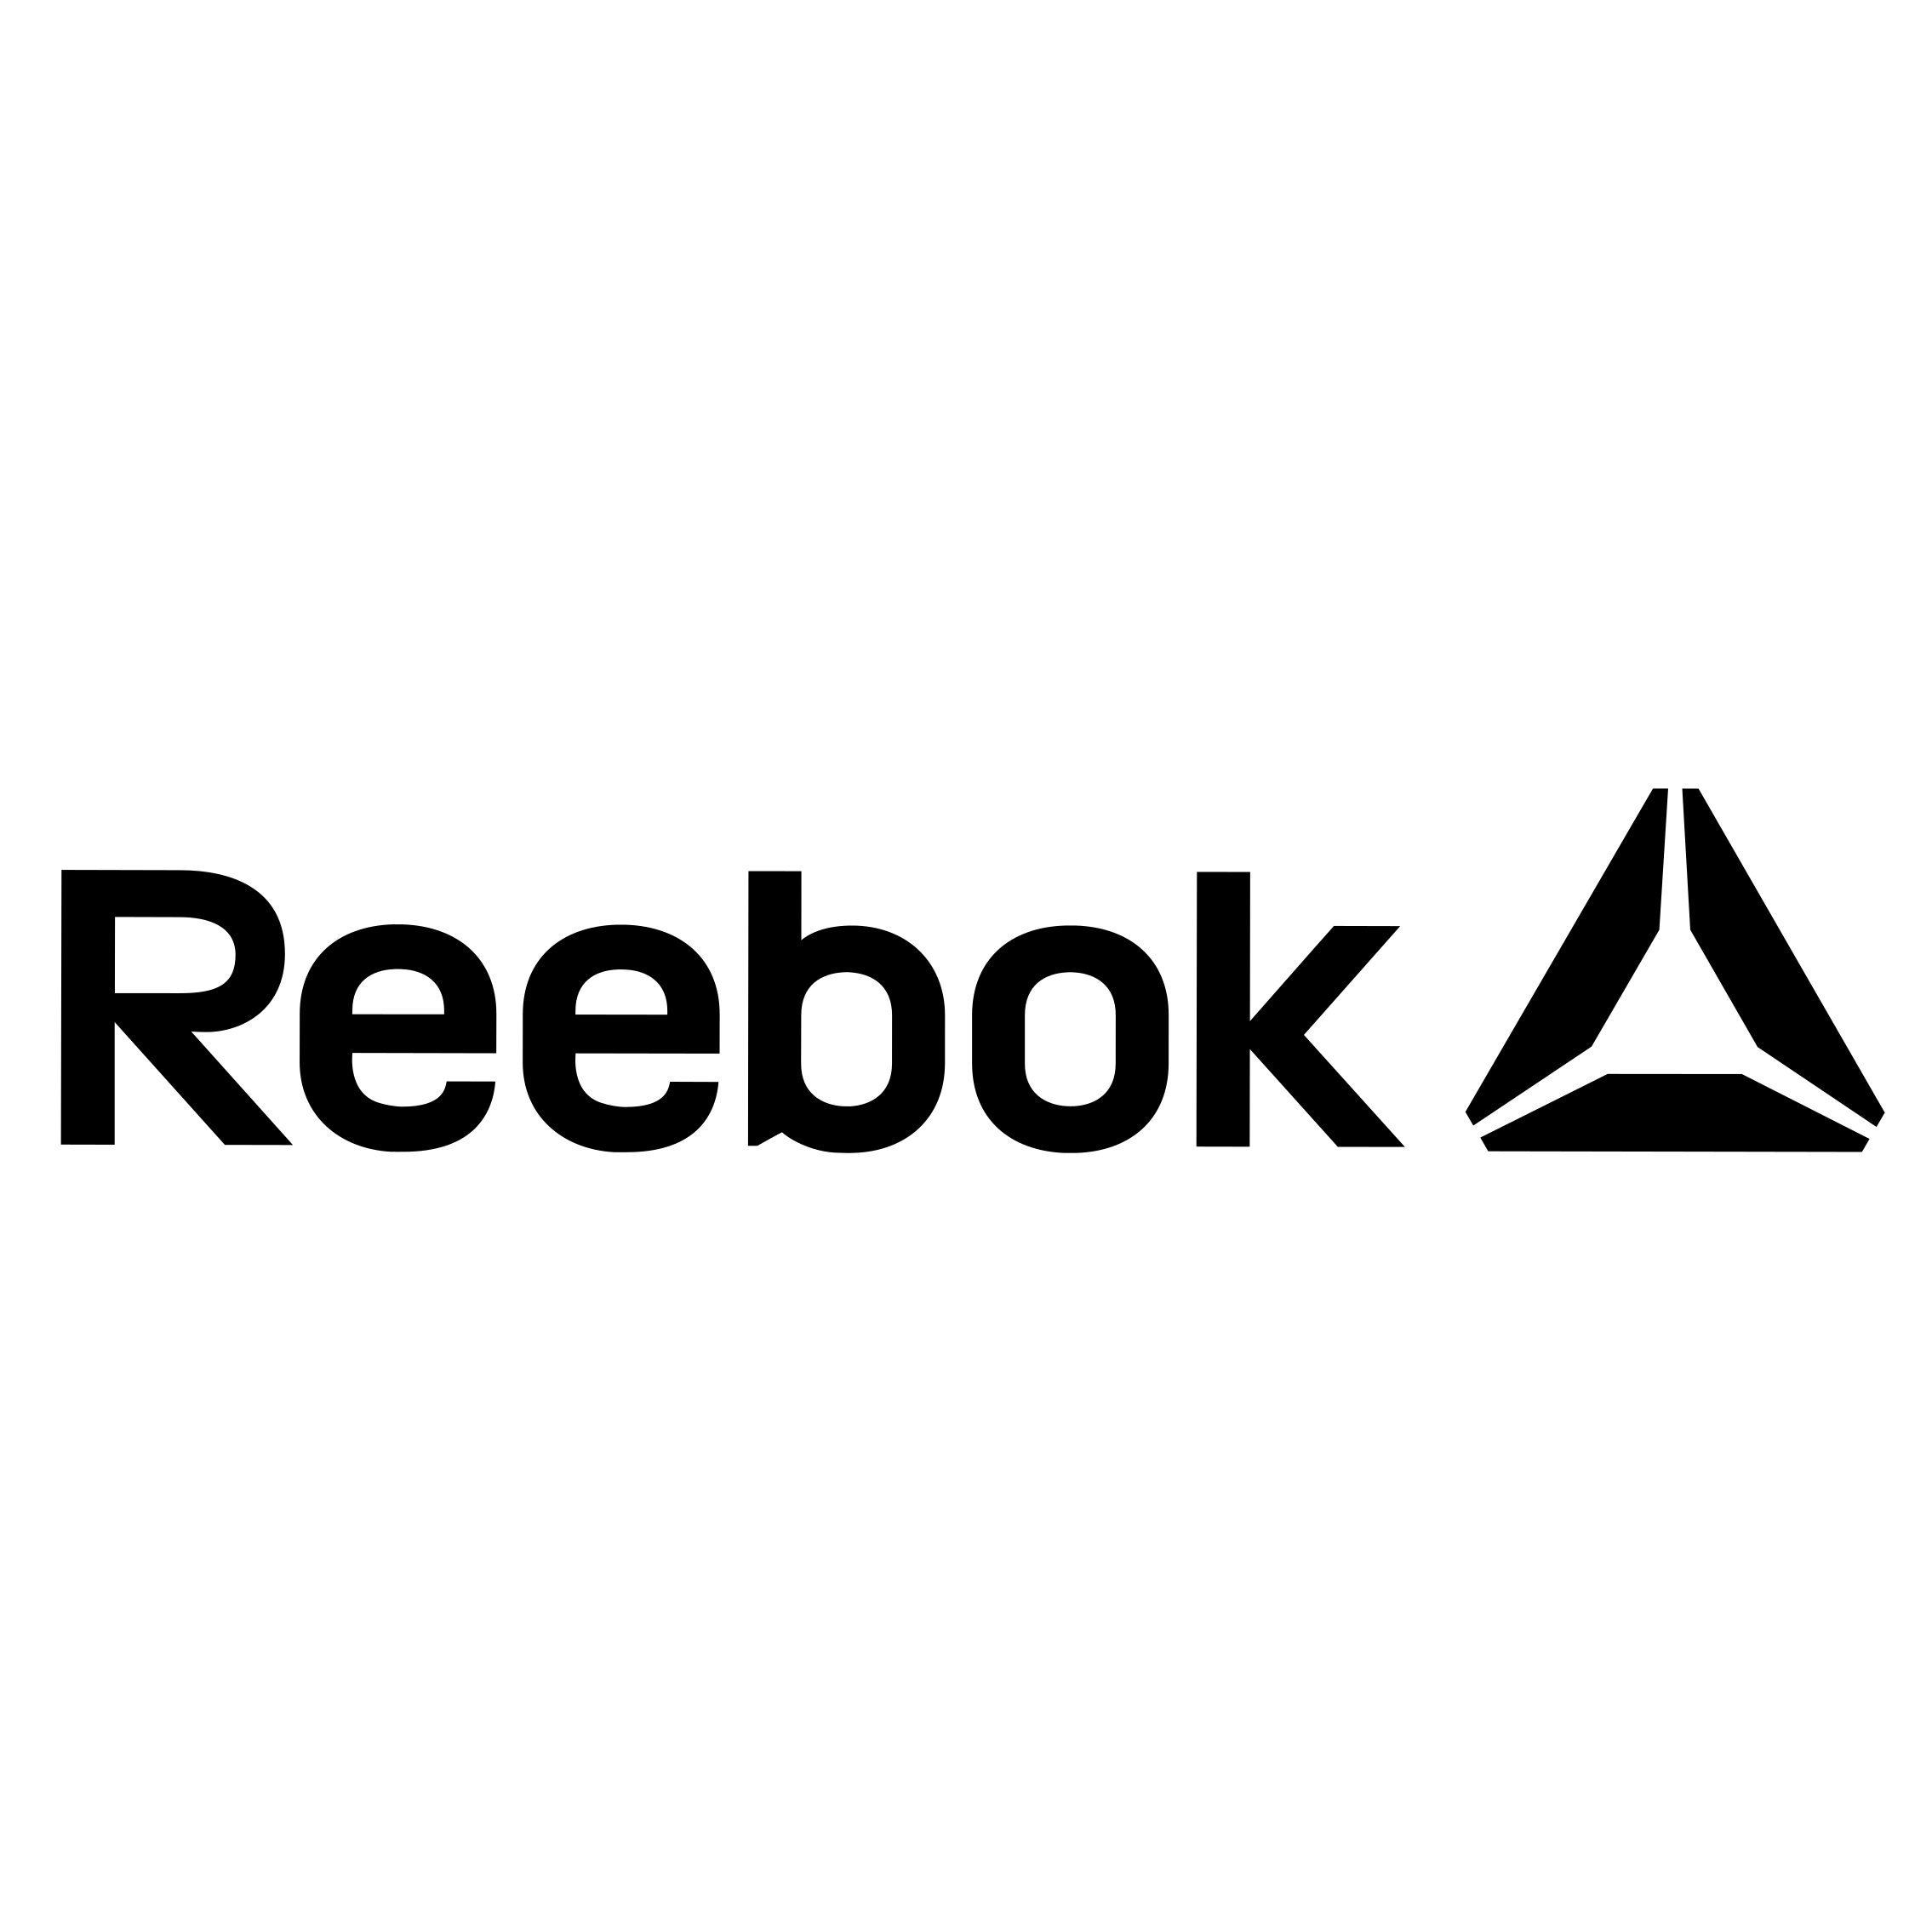 reebok-logo-black-and-white copy.png